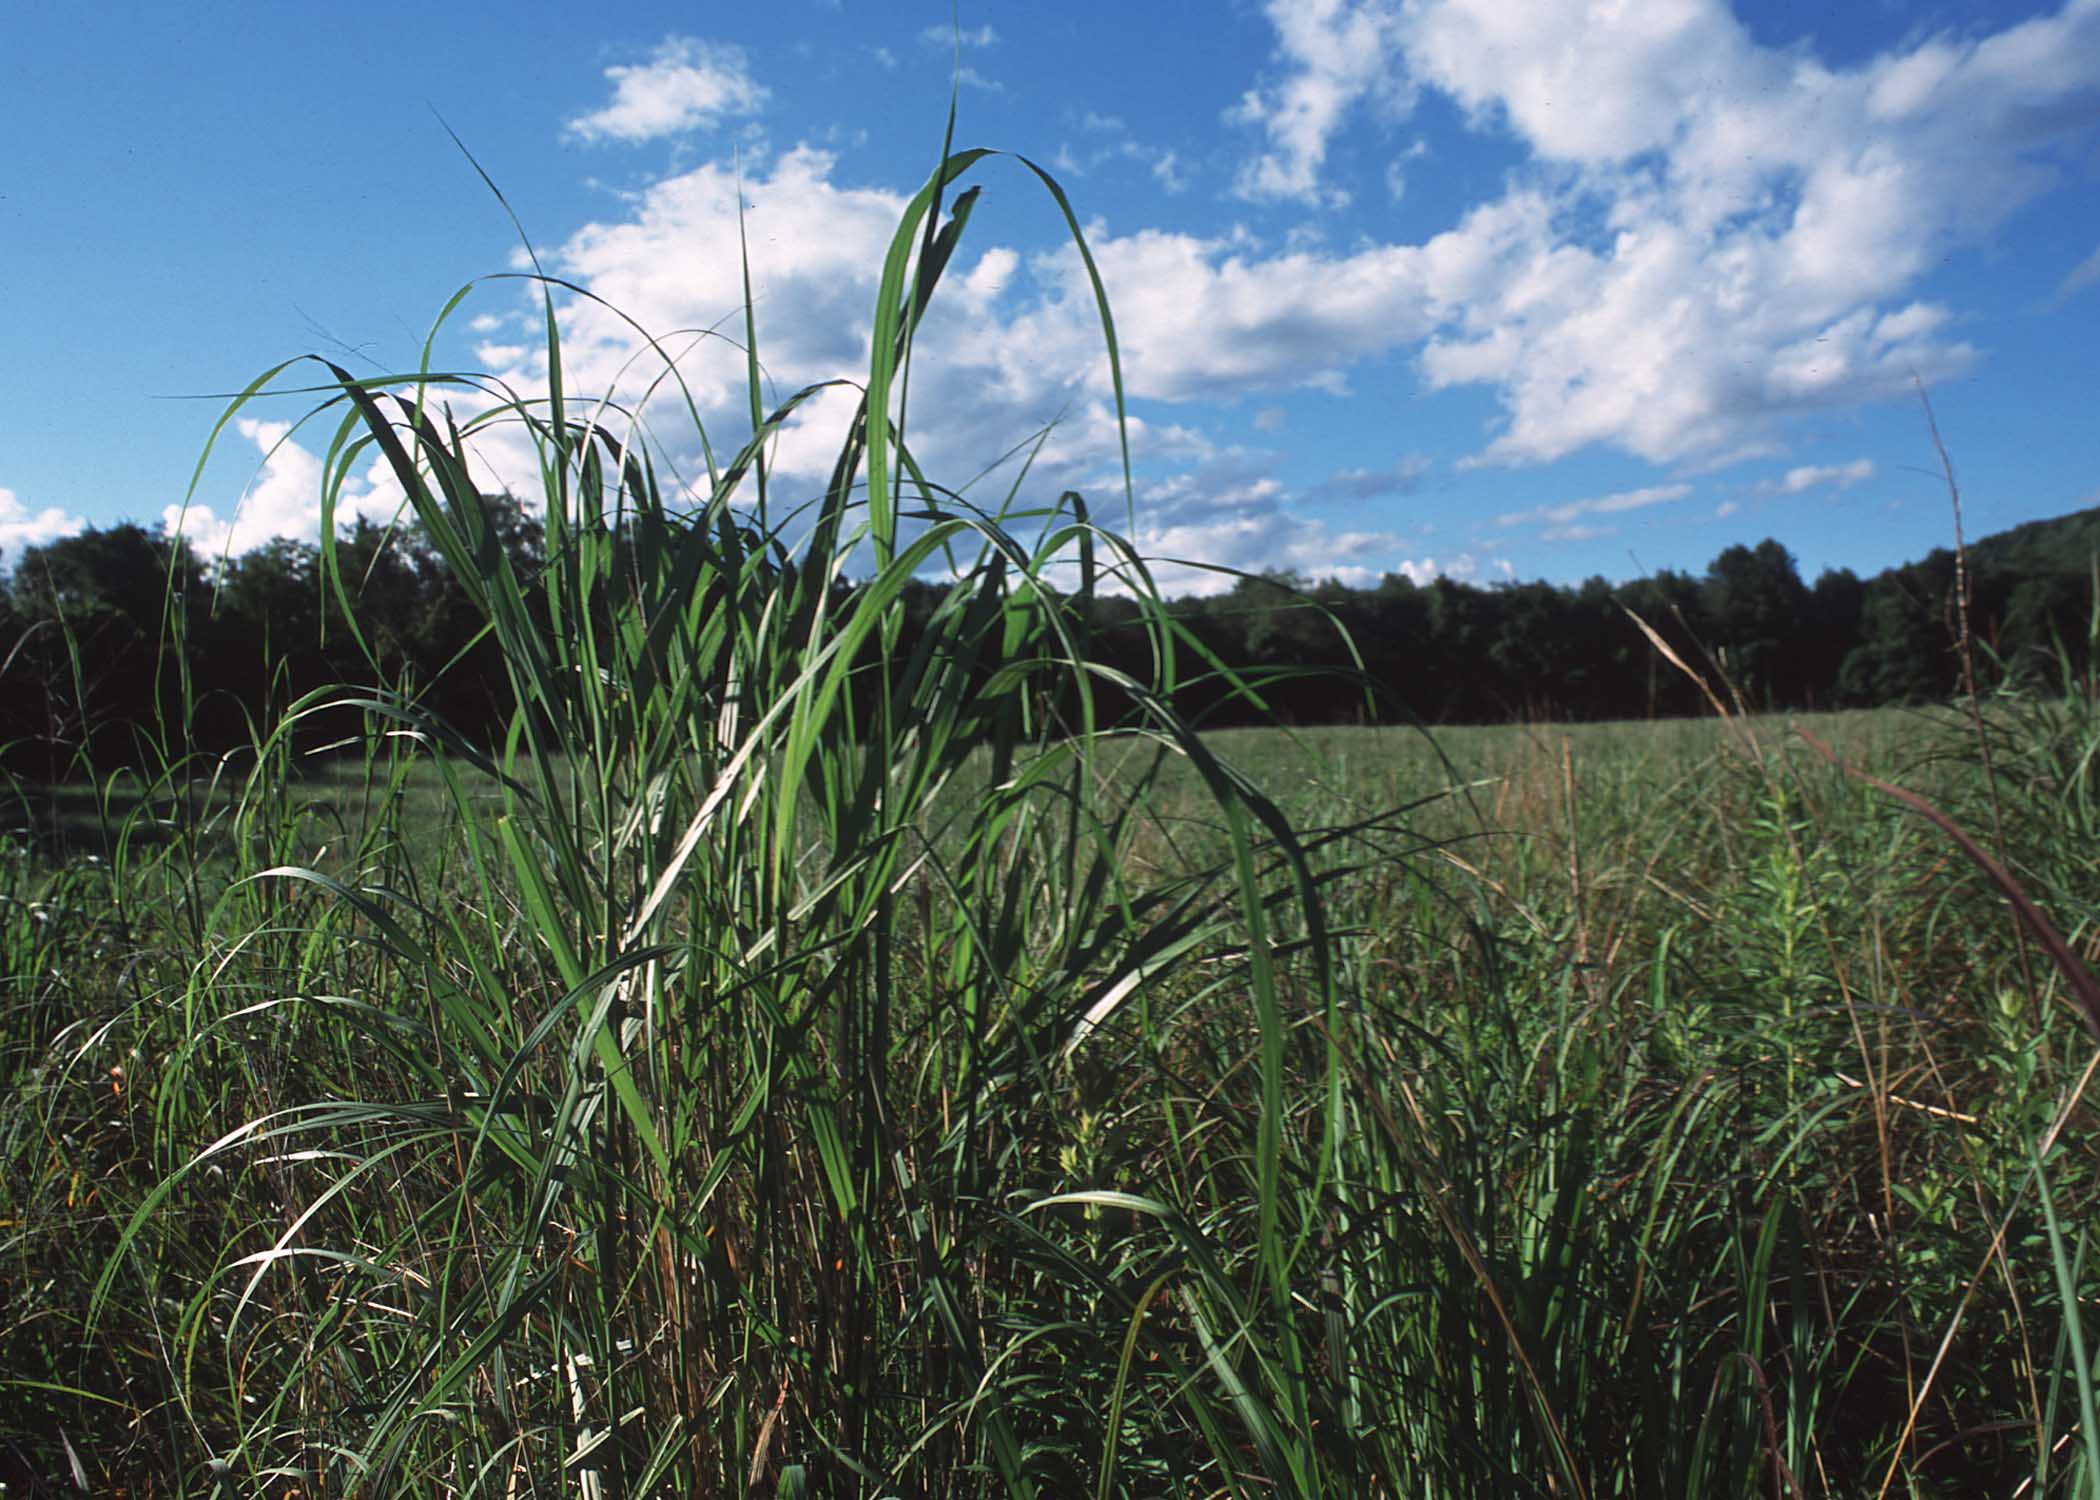 Grassland near Litchfield, Connecticut.